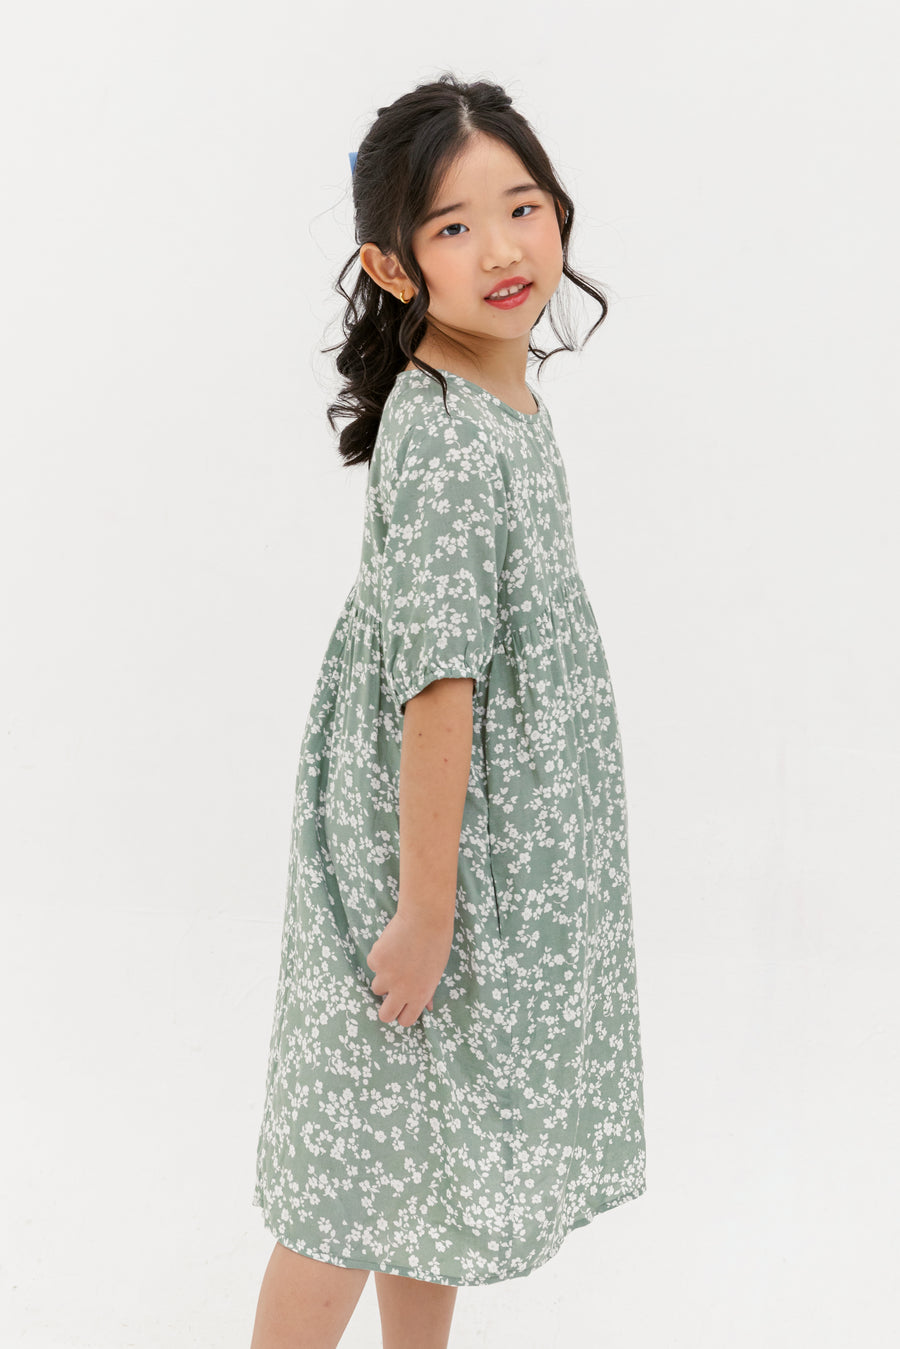 Briella Babydoll Dress In Green Floral